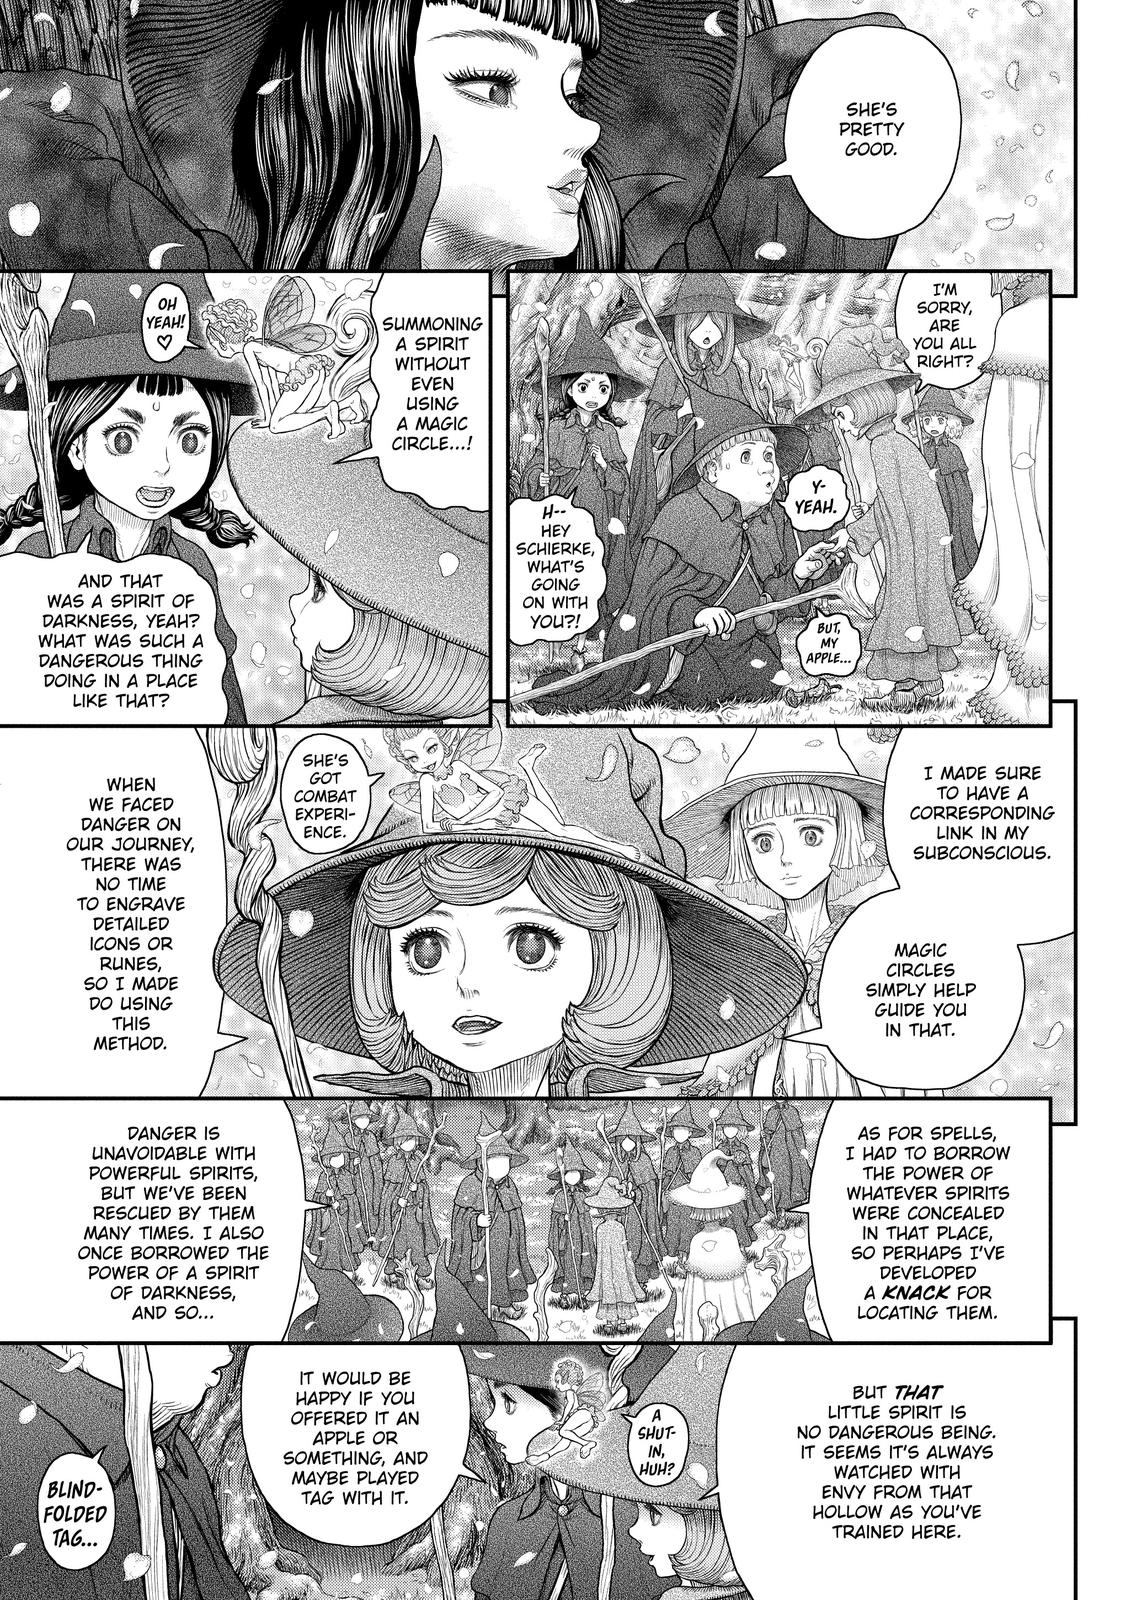 Berserk Manga Chapter 360 image 13